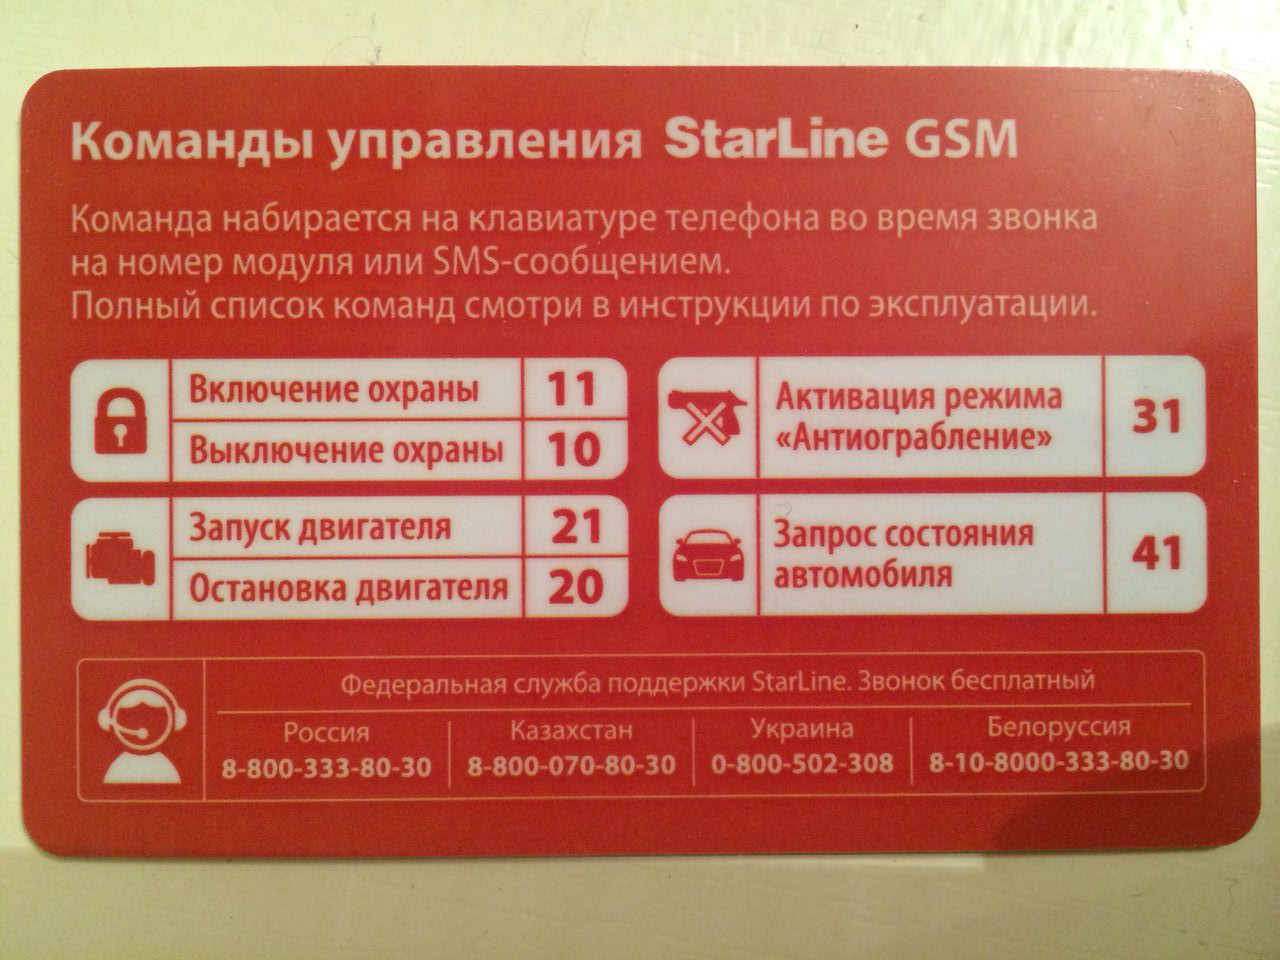 Gsm коды. Старлайн а93 GSM модуль. Коды команд старлайн GSM а93. SMS команды STARLINE a93. Komandi upravleniya STARLINE GSM а93.